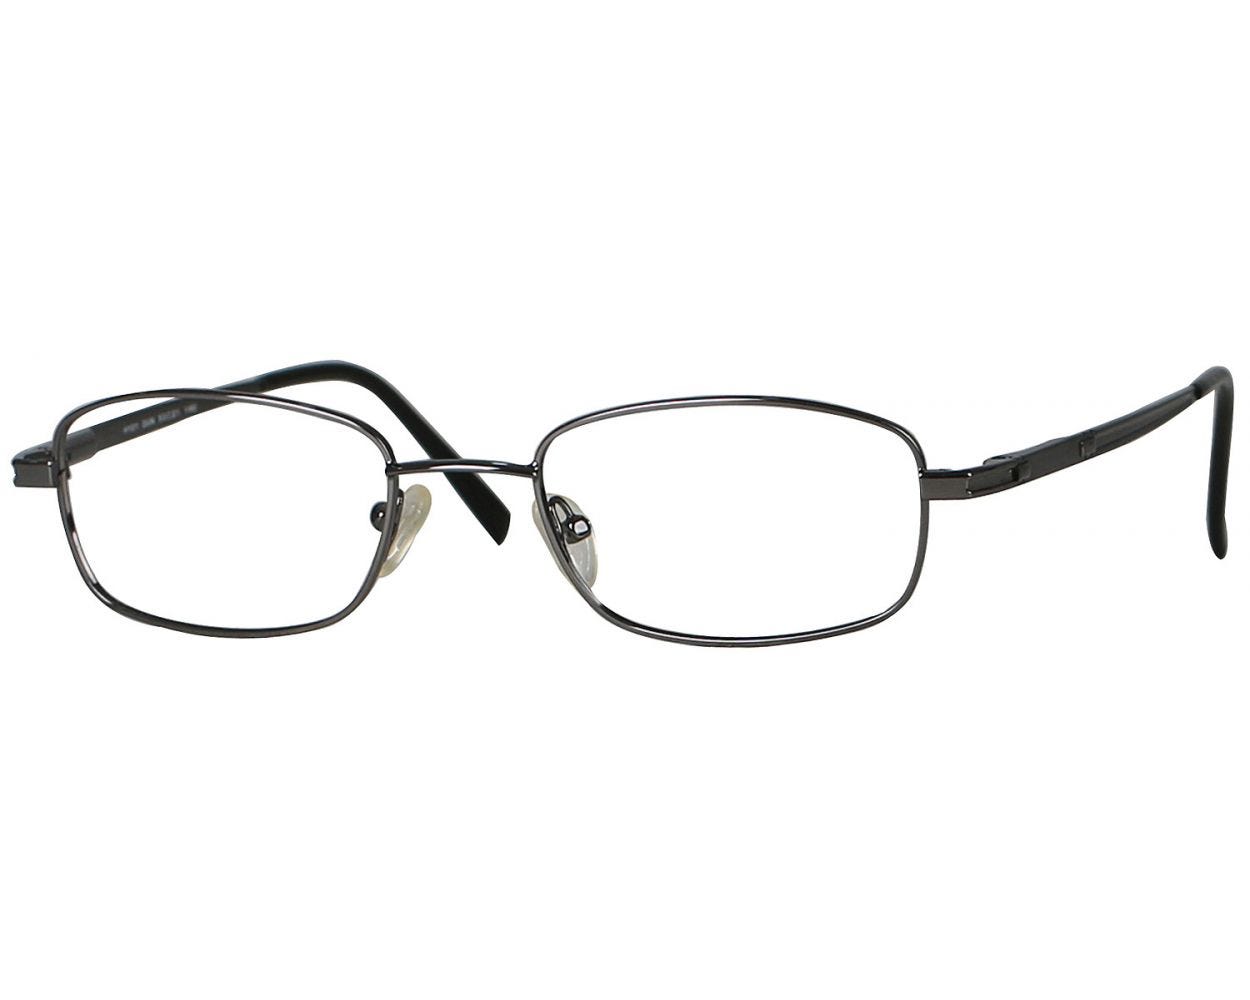 Ven Heusen Eyeglasses 144001-c